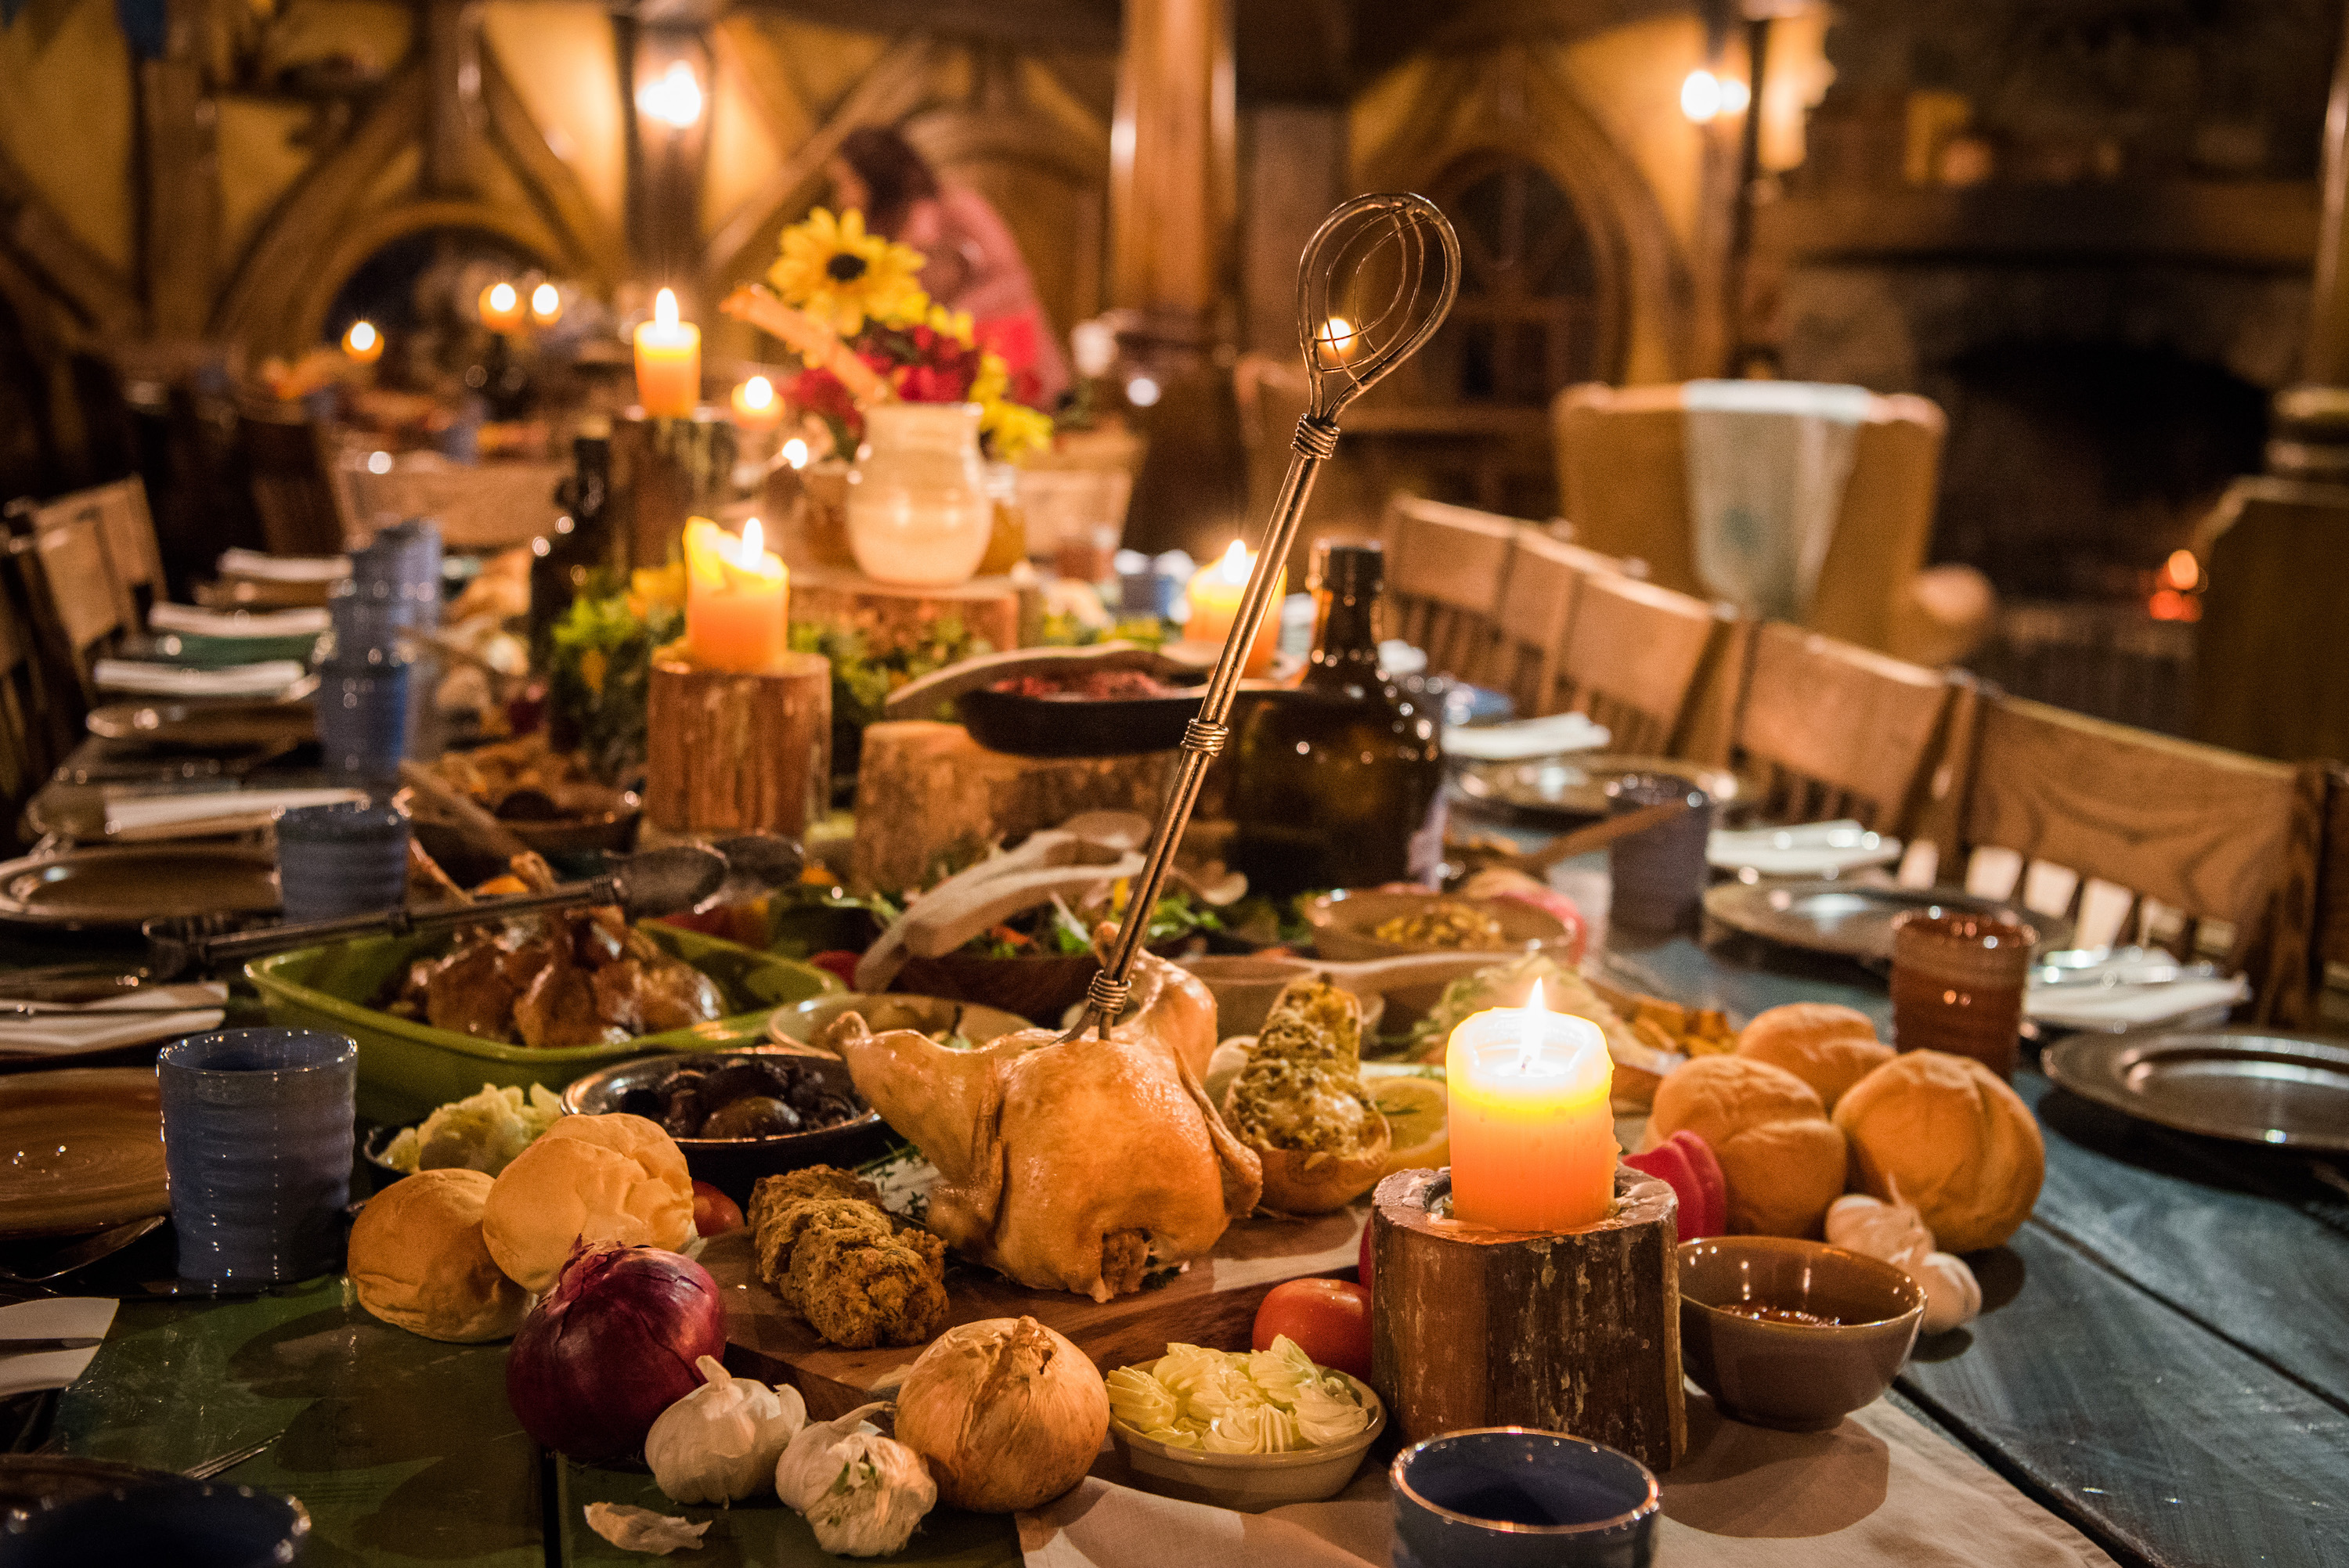 Явства как правильно. Еда в средневековом стиле. Шикарный стол с едой. Средневековый обед. Стол с яствами.